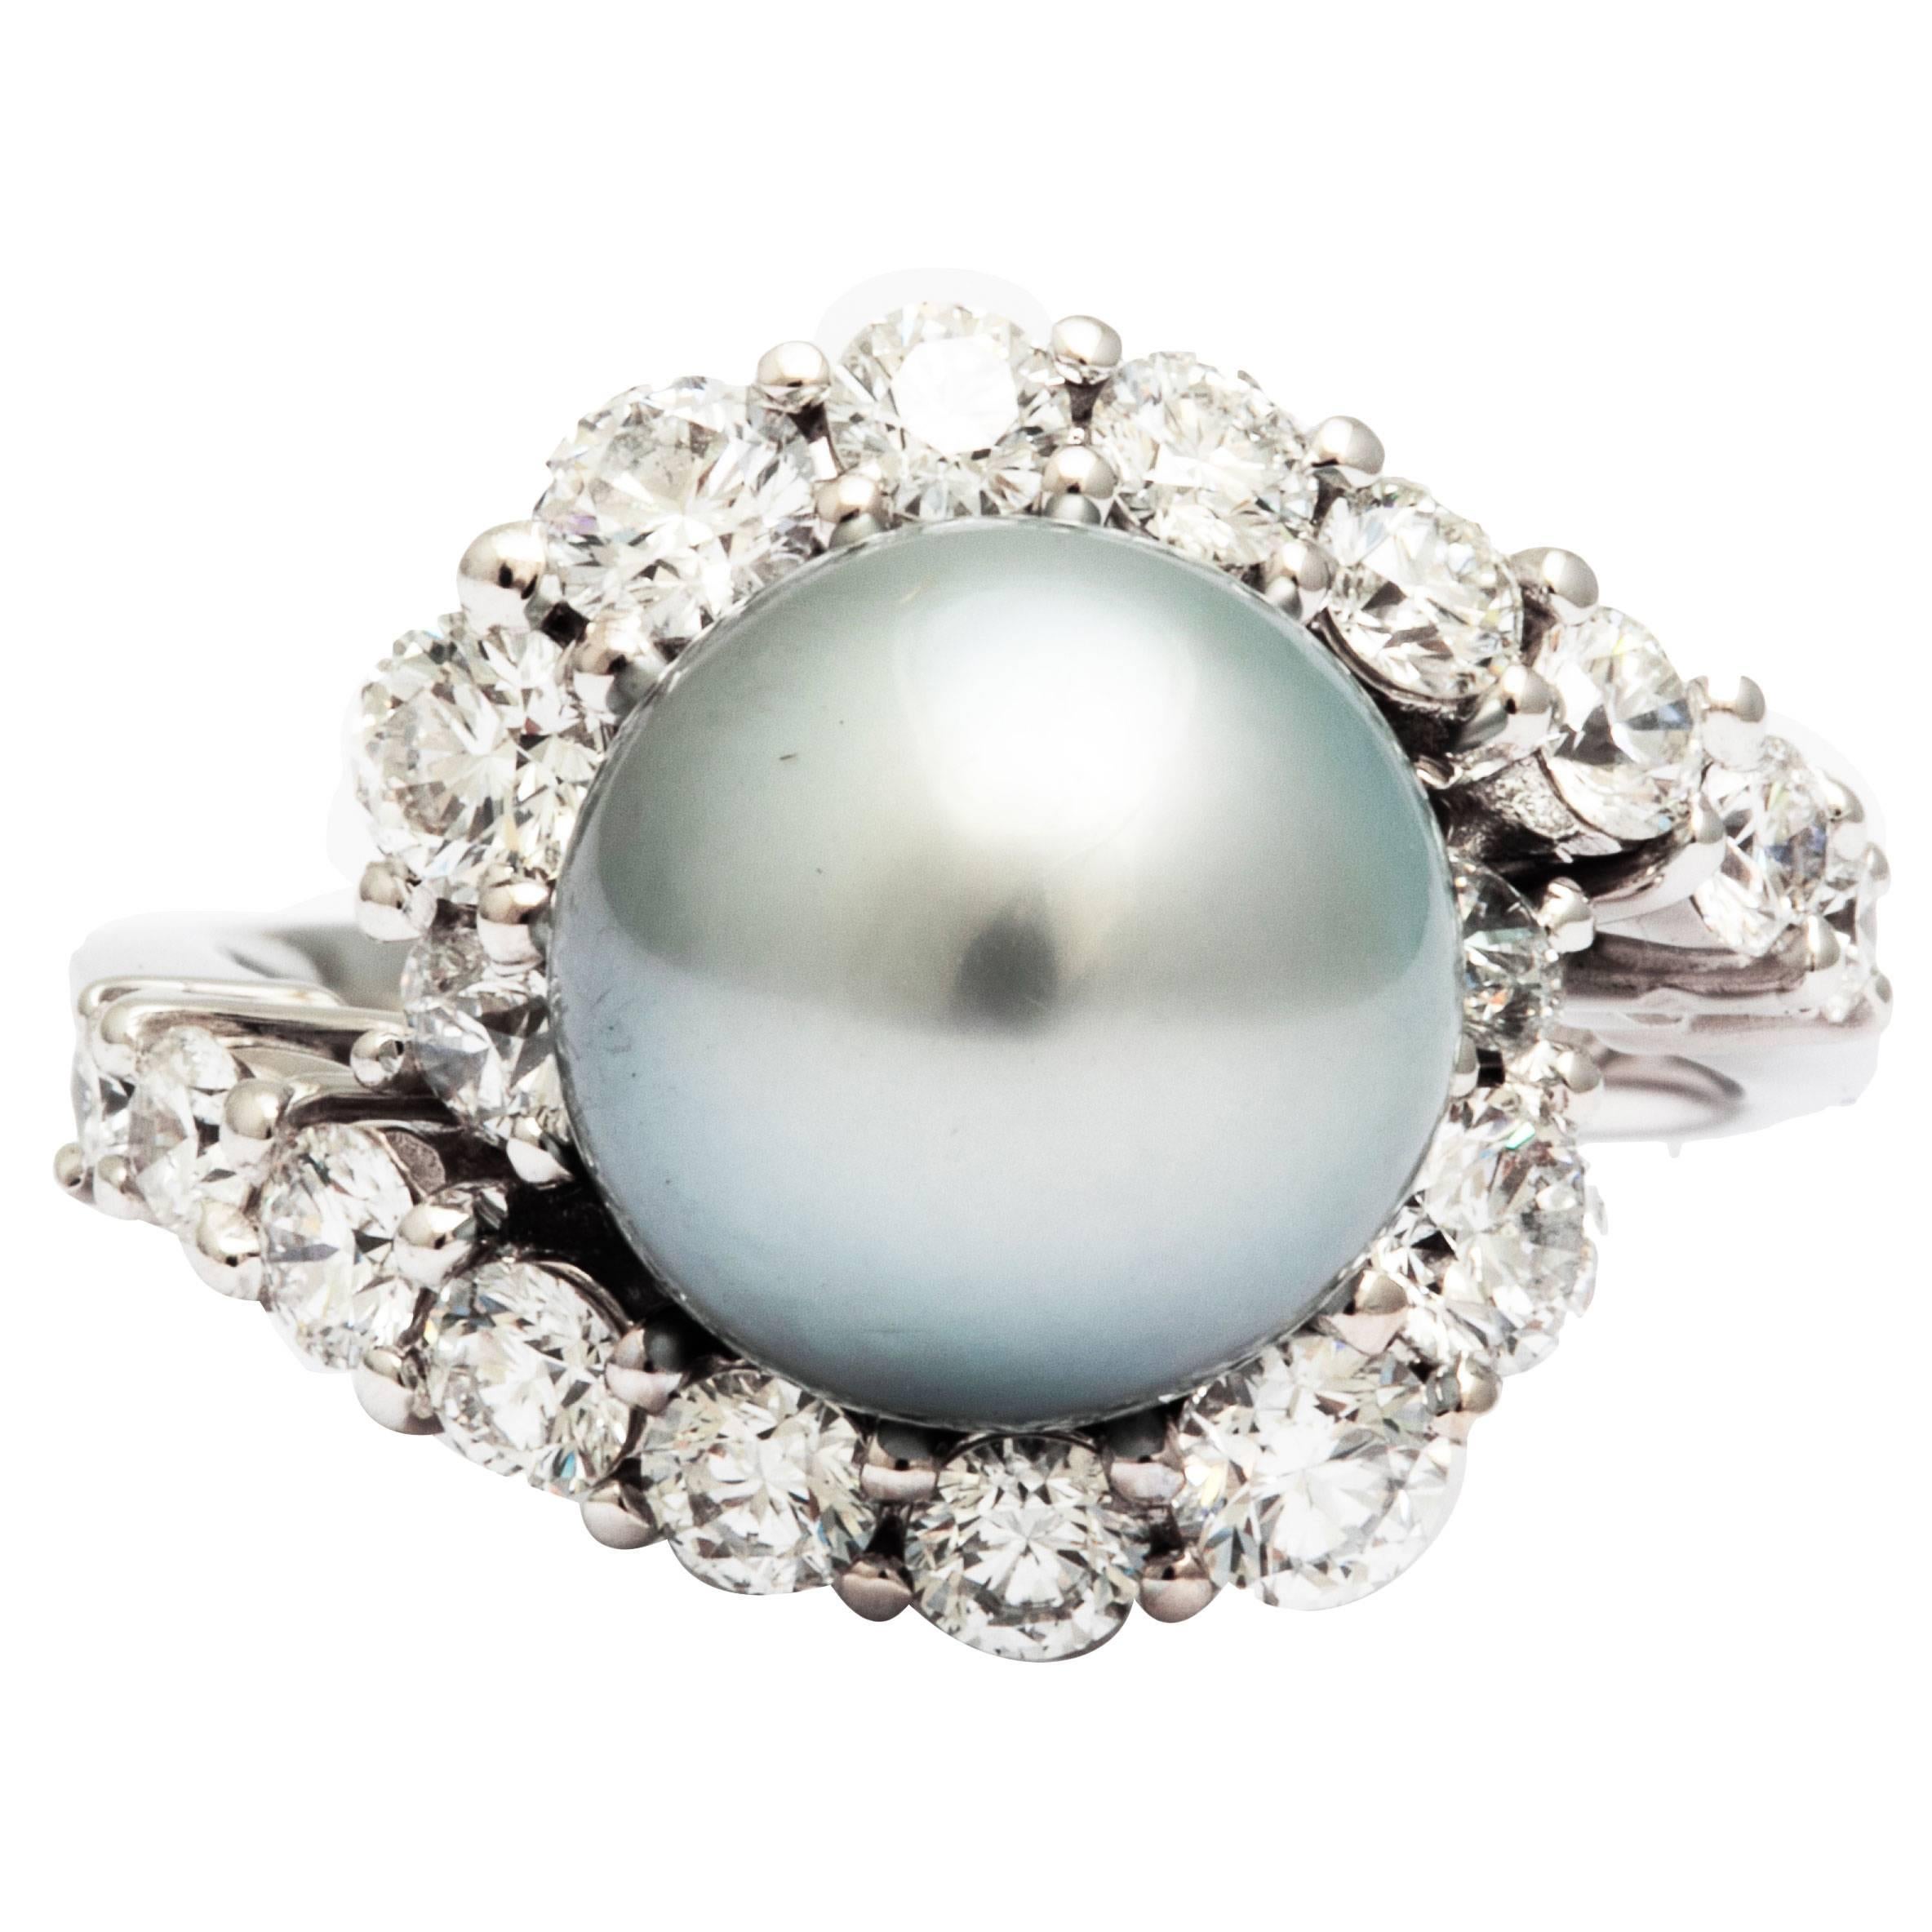 Goldring aus Silber mit grauer und grauer Tahiti-Perle 1,72 Karat Diamanten